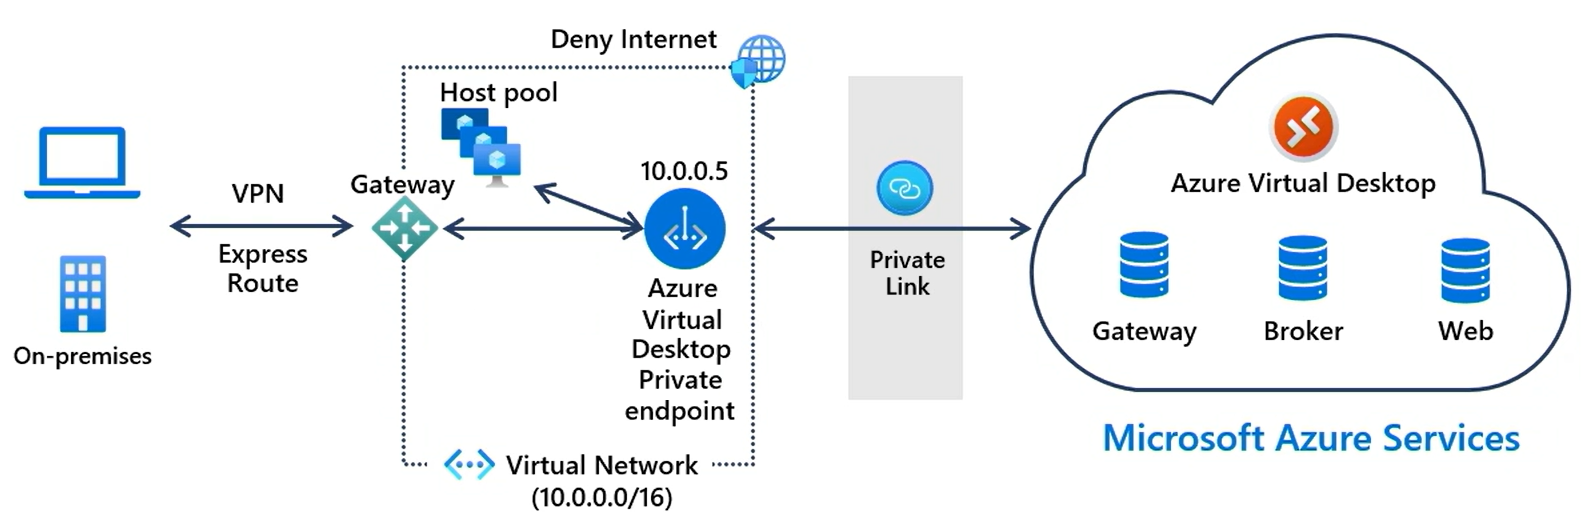 Een diagram op hoog niveau waarin Private Link een lokale client verbindt met de Azure Virtual Desktop-service.